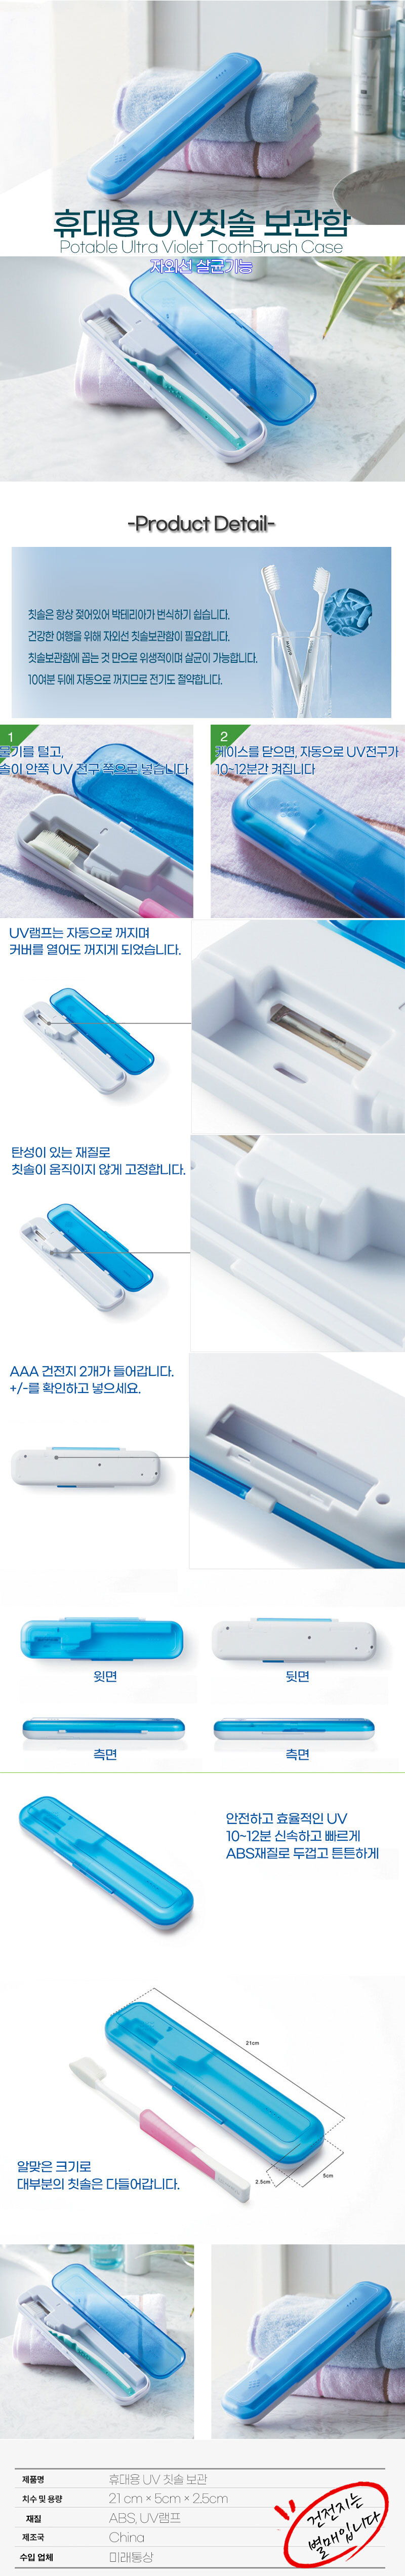 UV_toothbrush_case_detail.jpg